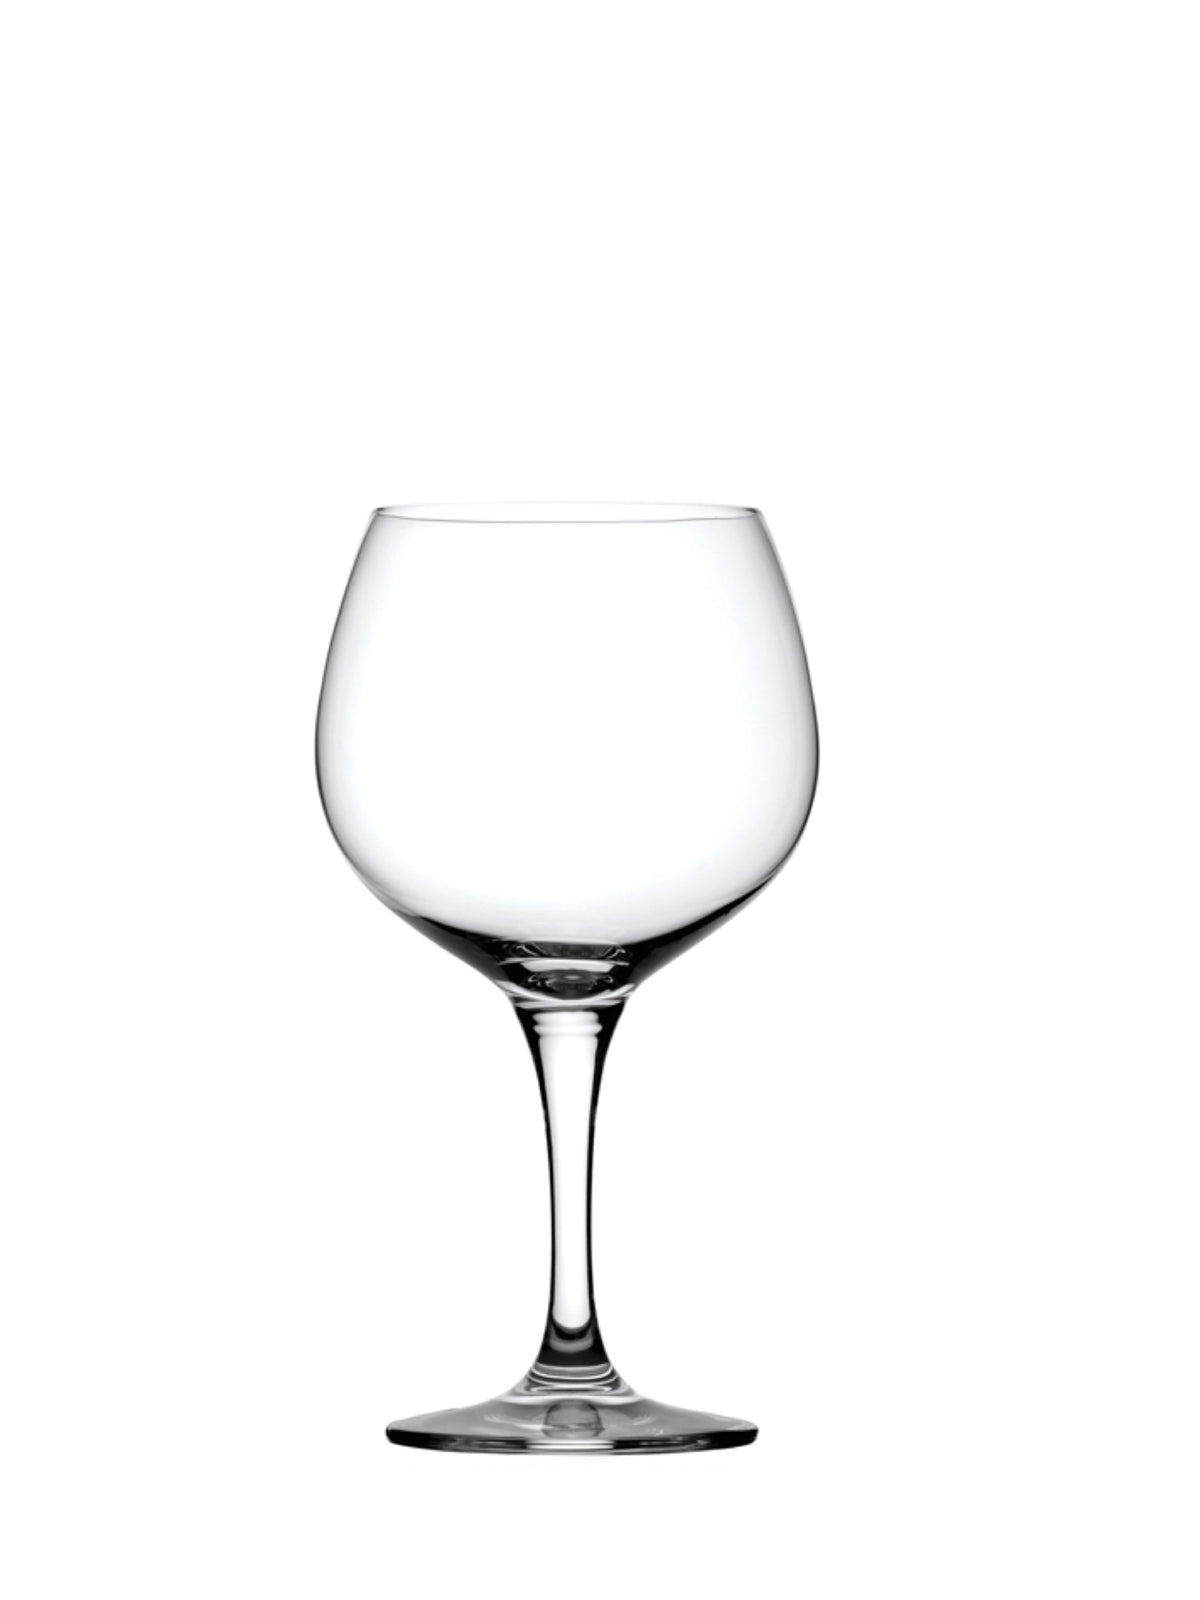 Primeur rødvinsglas (58 cl) - et elegant og funktionelt glas til servering af din yndlingsrødvin.